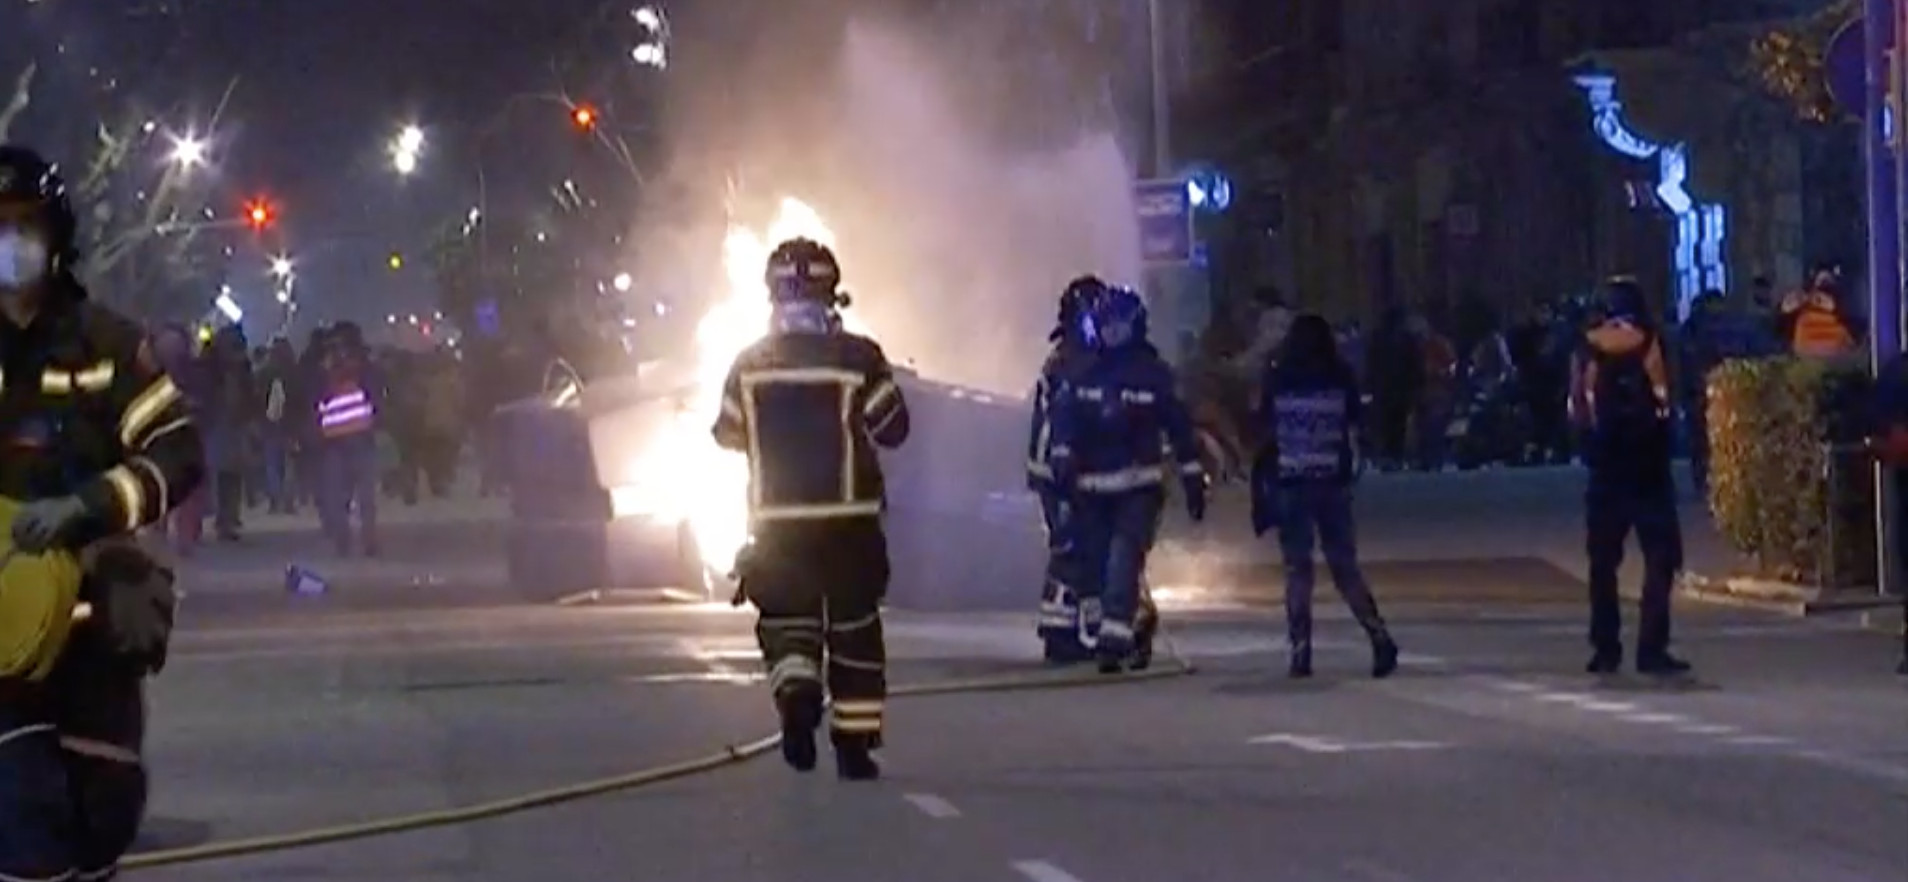 Bomberos apagan un fuego en el centro de Barcelona durante la cuarta noche de disturbios por la detención de Pablo Hasél / YOUTUBE